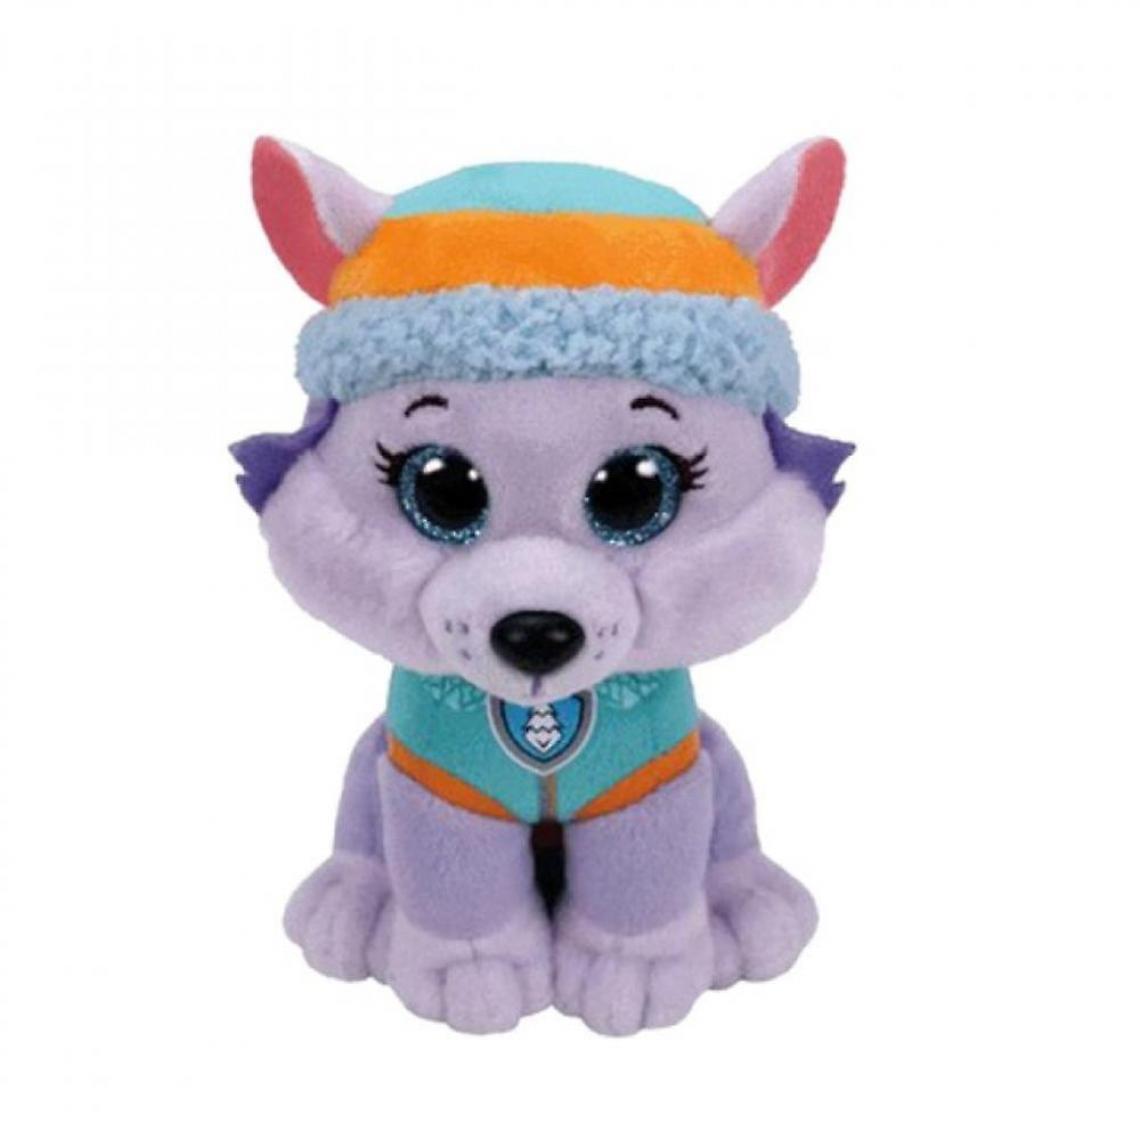 Universal - Pattes patrouille Everest 20 cm chien peluche action poupée numérique jouet(Violet) - Animaux